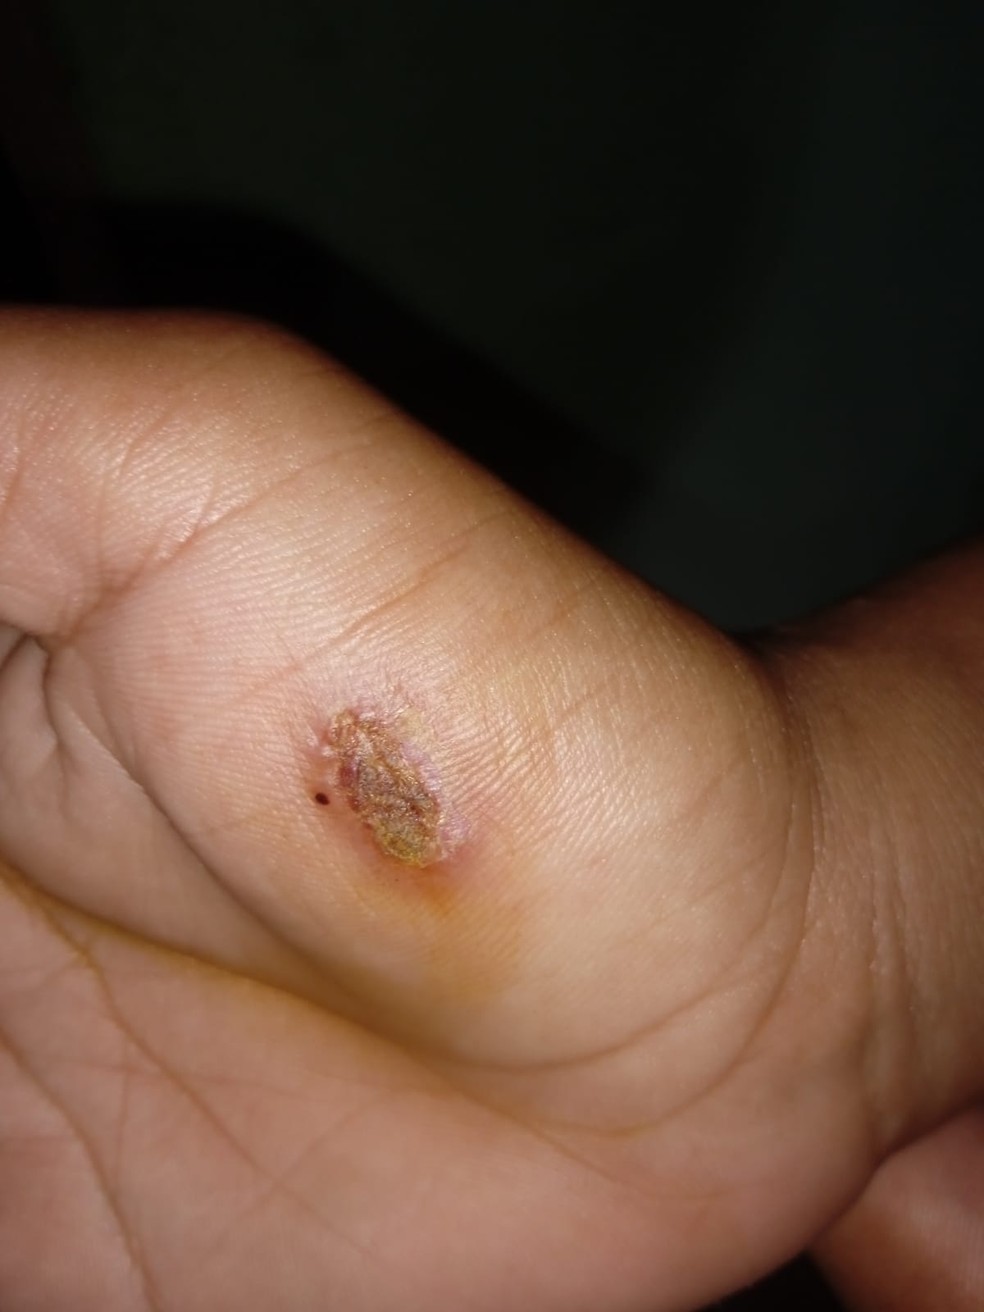 Lesão provocada por mordida em adolescente de 16 anos  — Foto: Divulgação/Polícia Civil